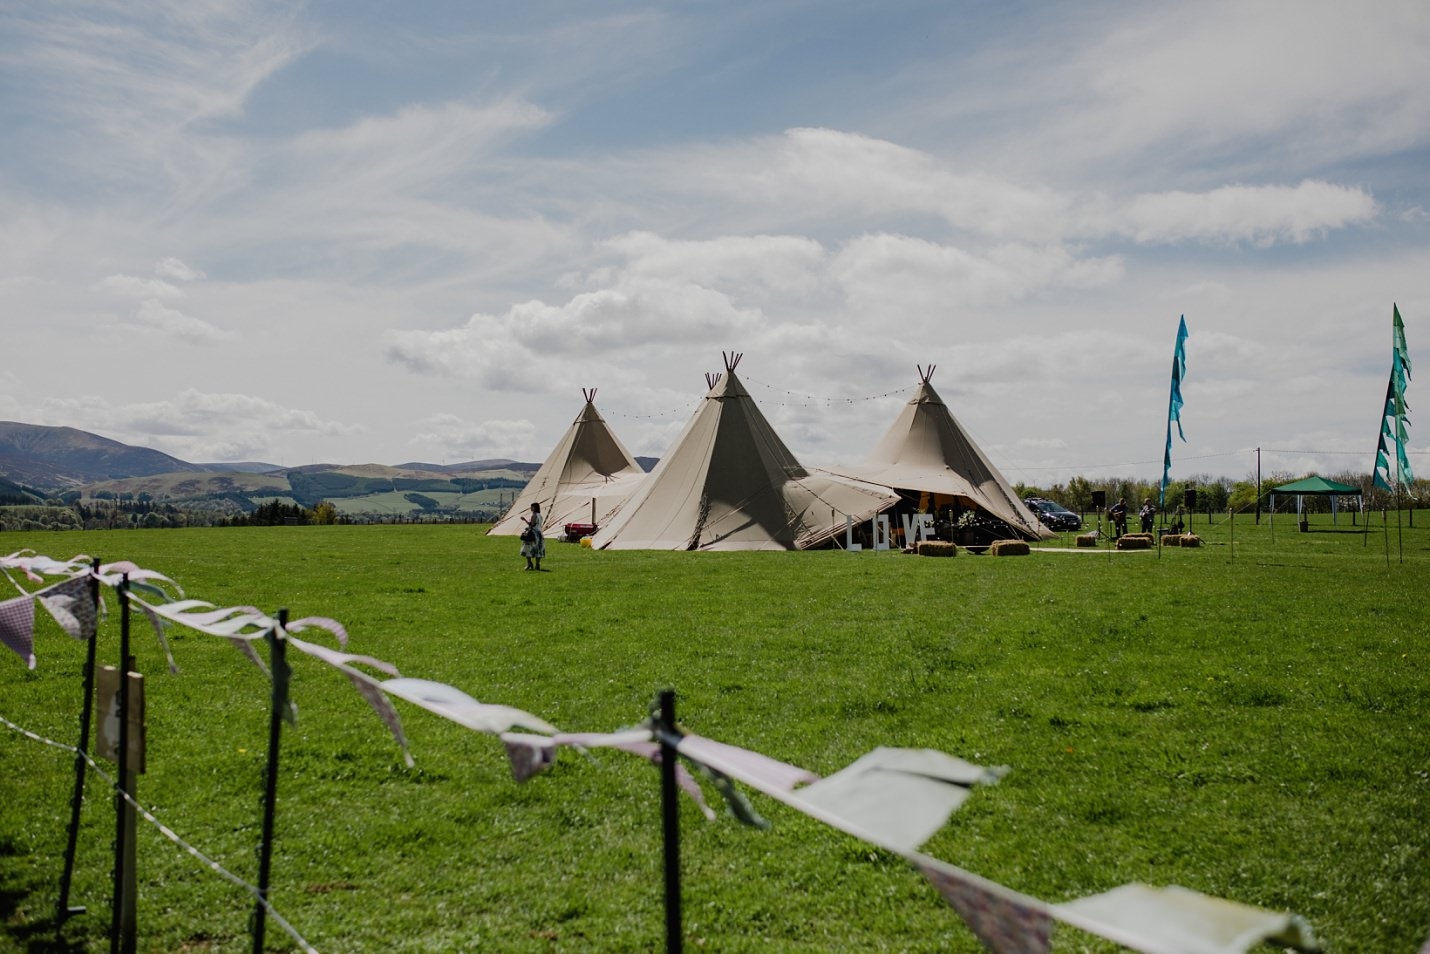 mariage de ferme de festival de tipi dans les tipis écossais de biggar de frontières dans le champ avec des drapeaux de festival